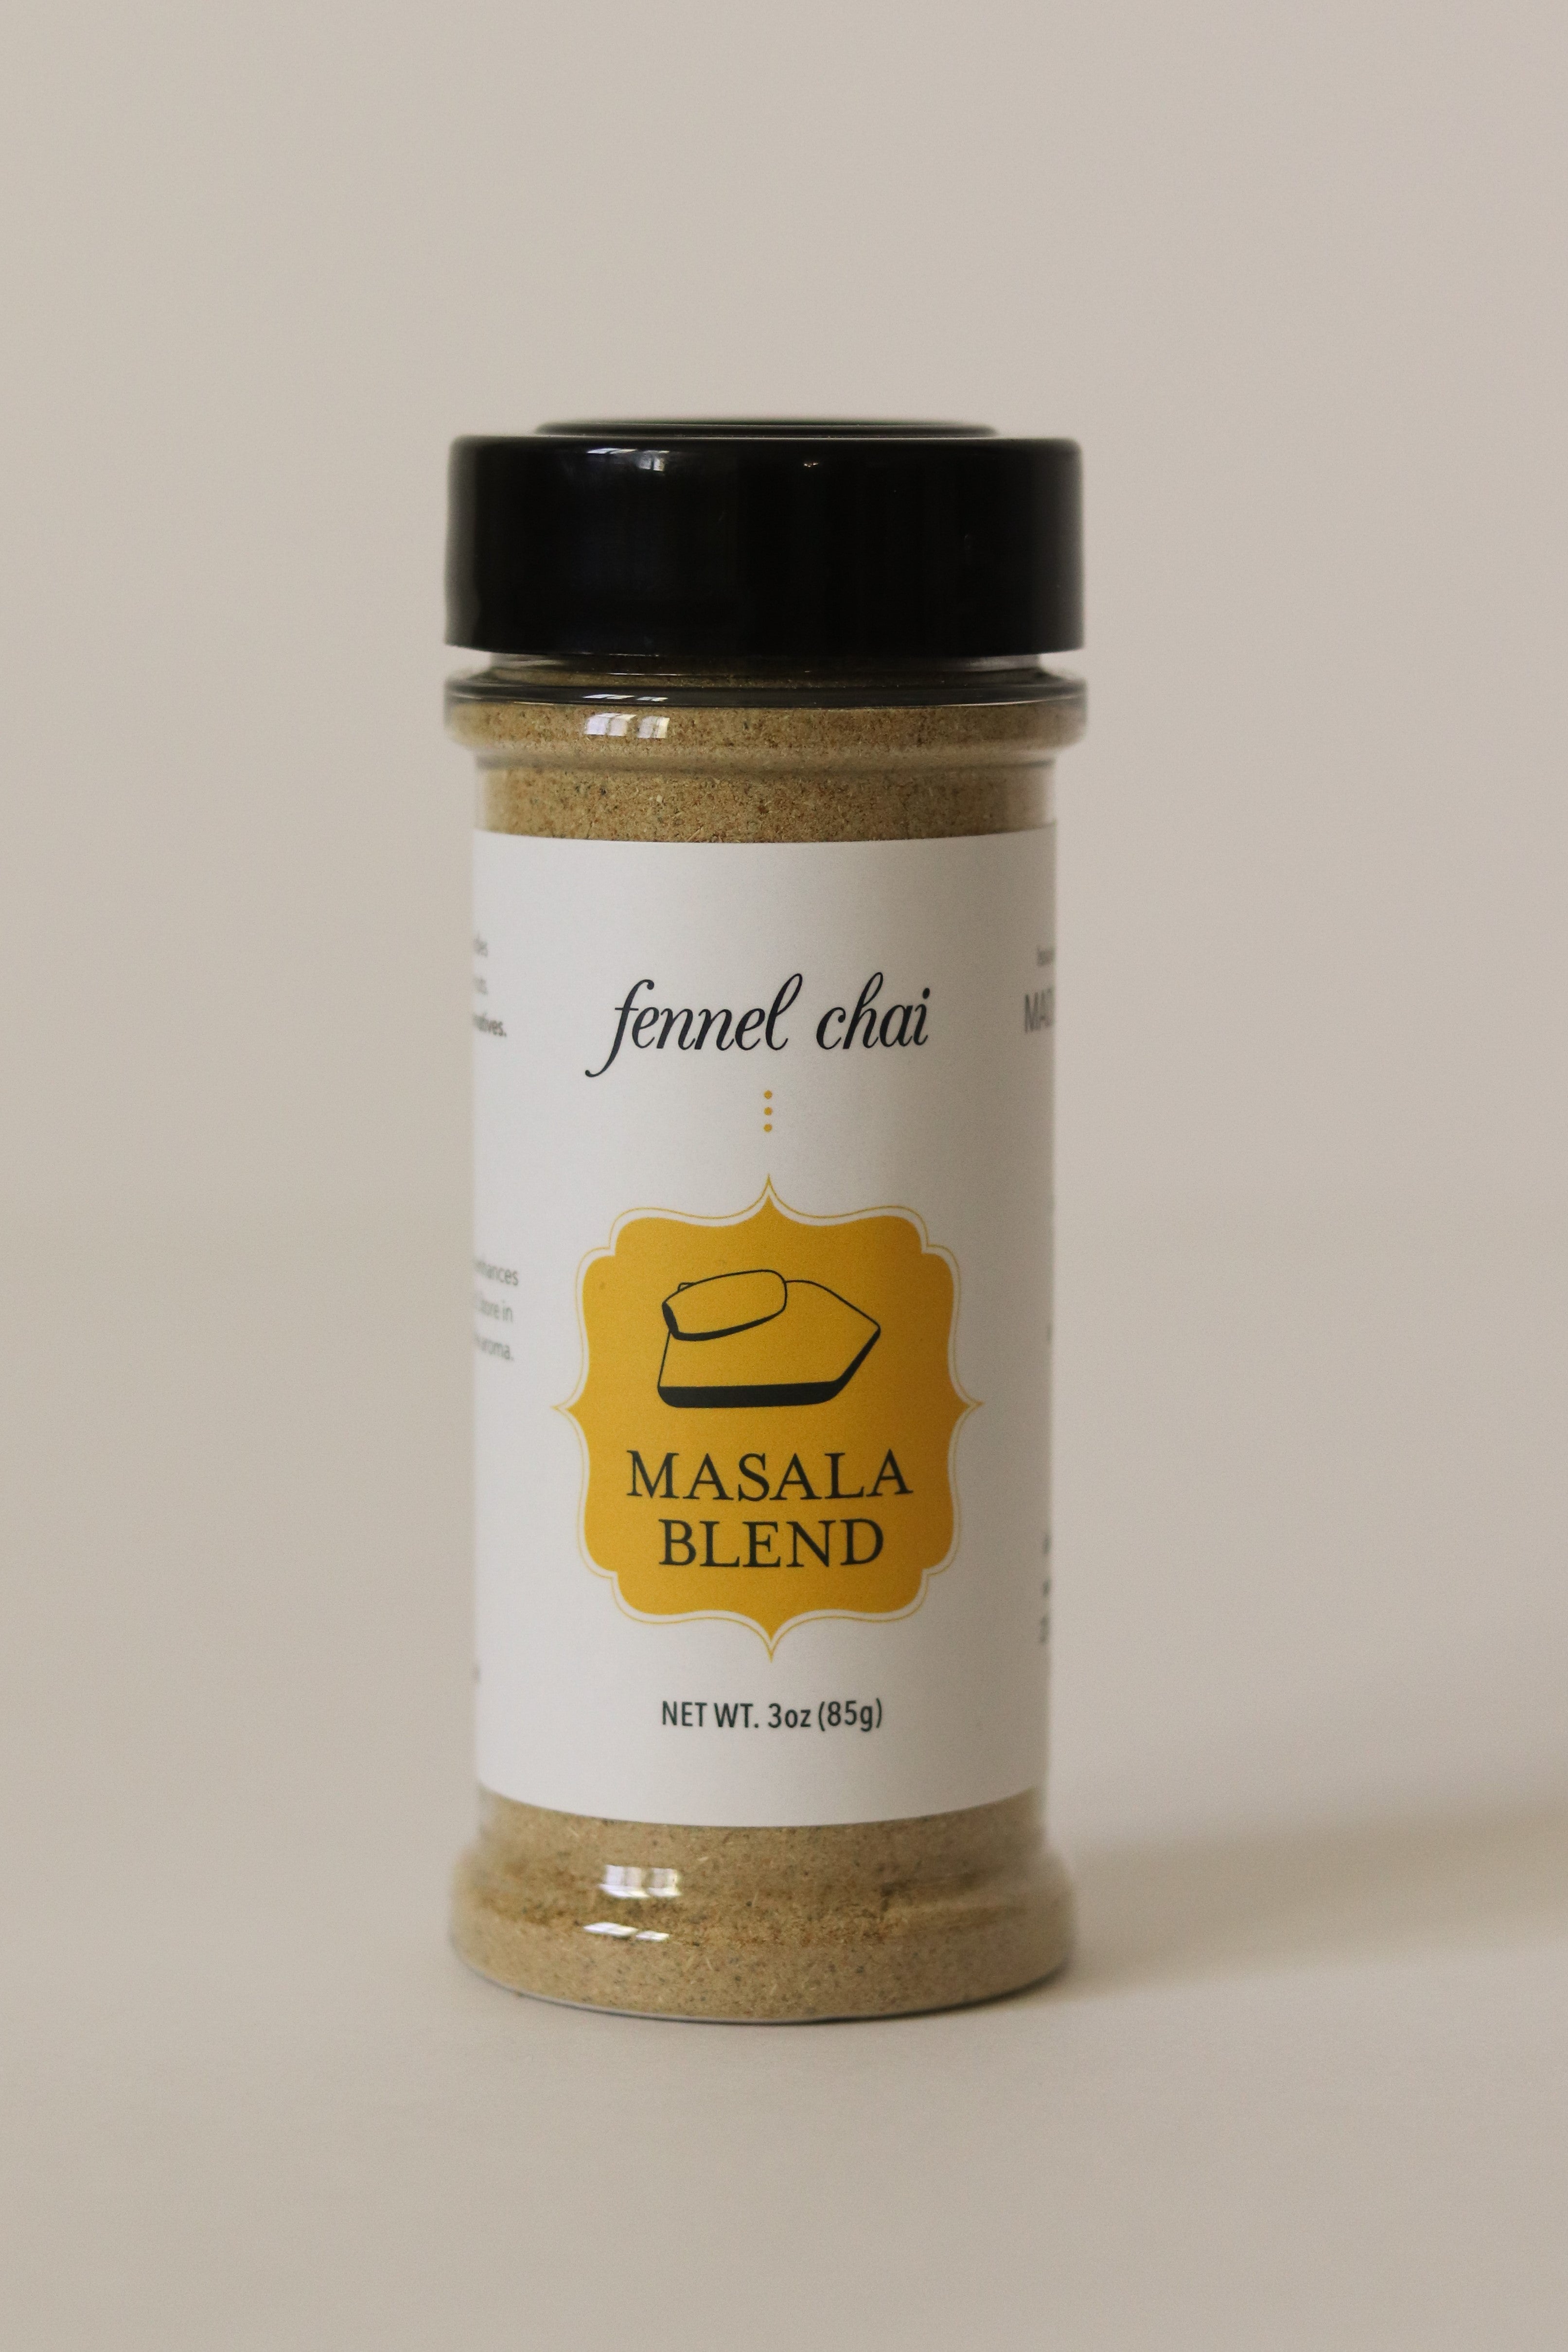 fennel chai masala blend